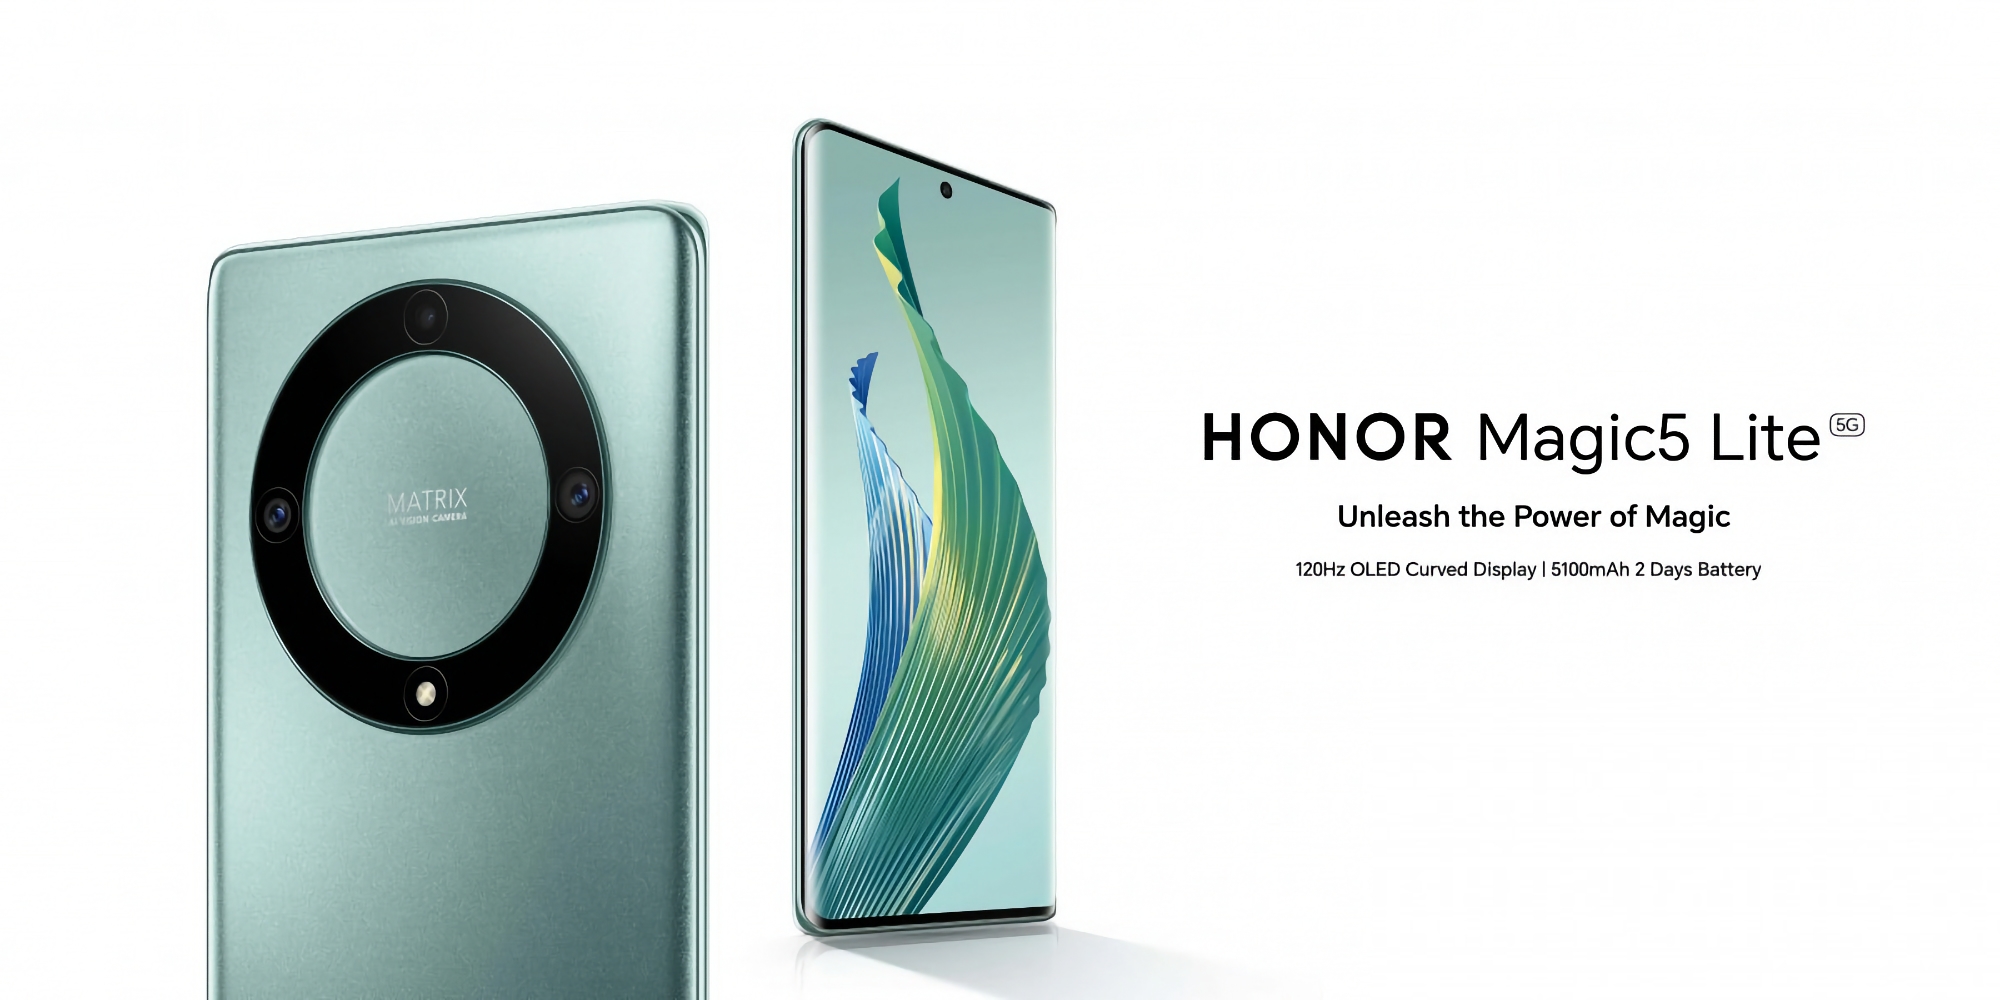 Honor Magic 5 Lite debütiert in Europa: 120Hz AMOLED-Bildschirm, Snapdragon 695 Chip und 5100mAh Akku für 379€